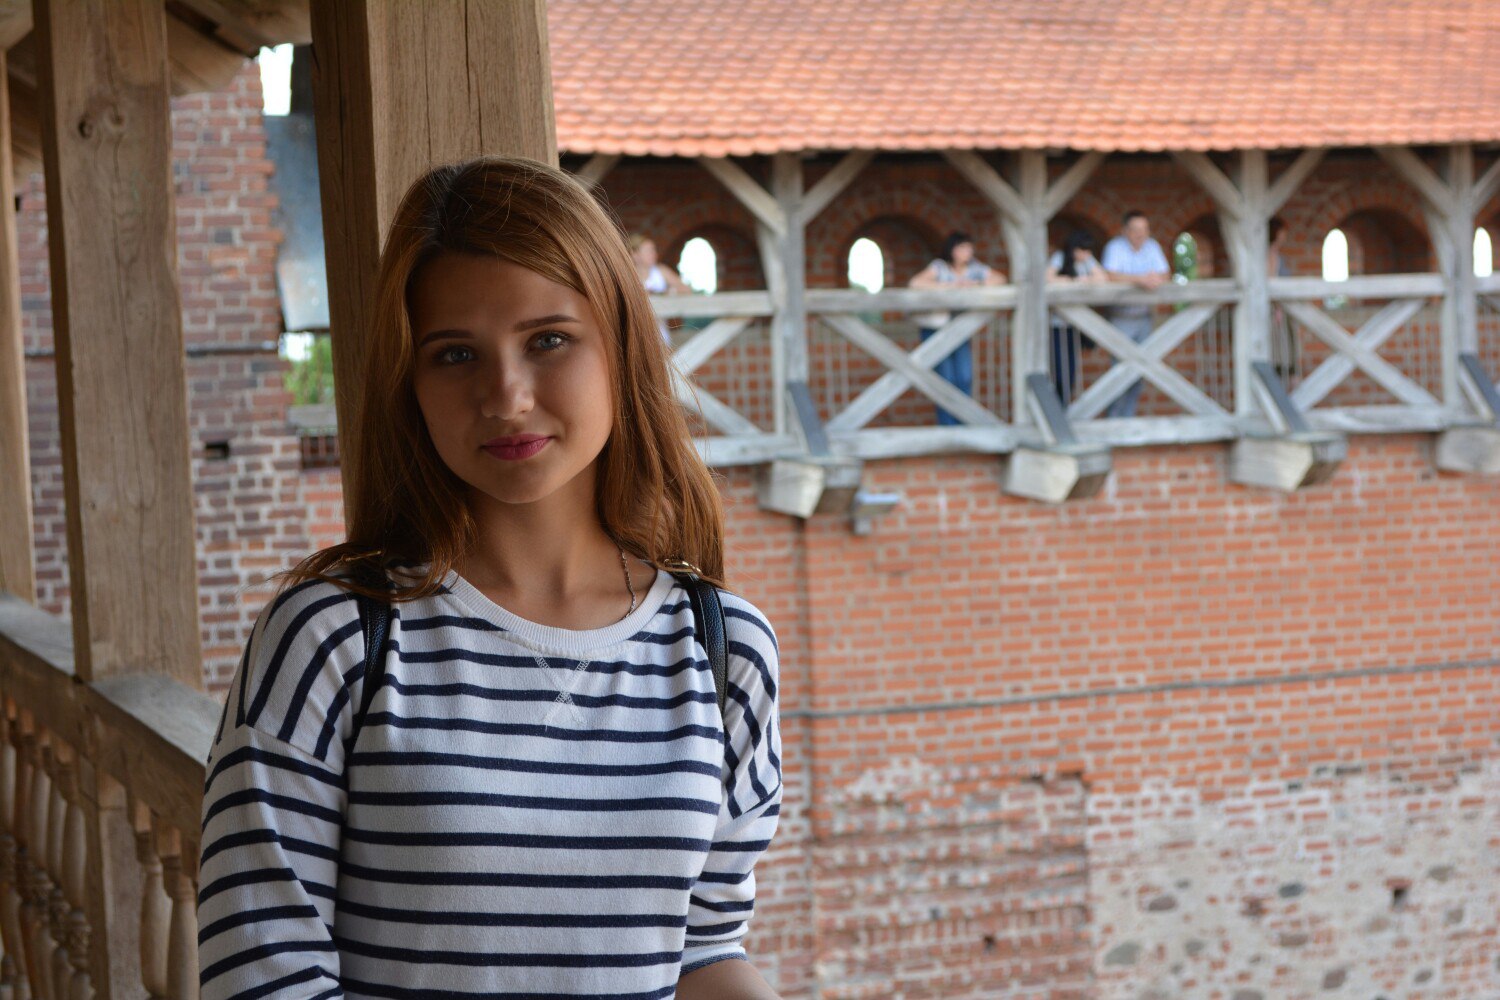 Daria from Belarus